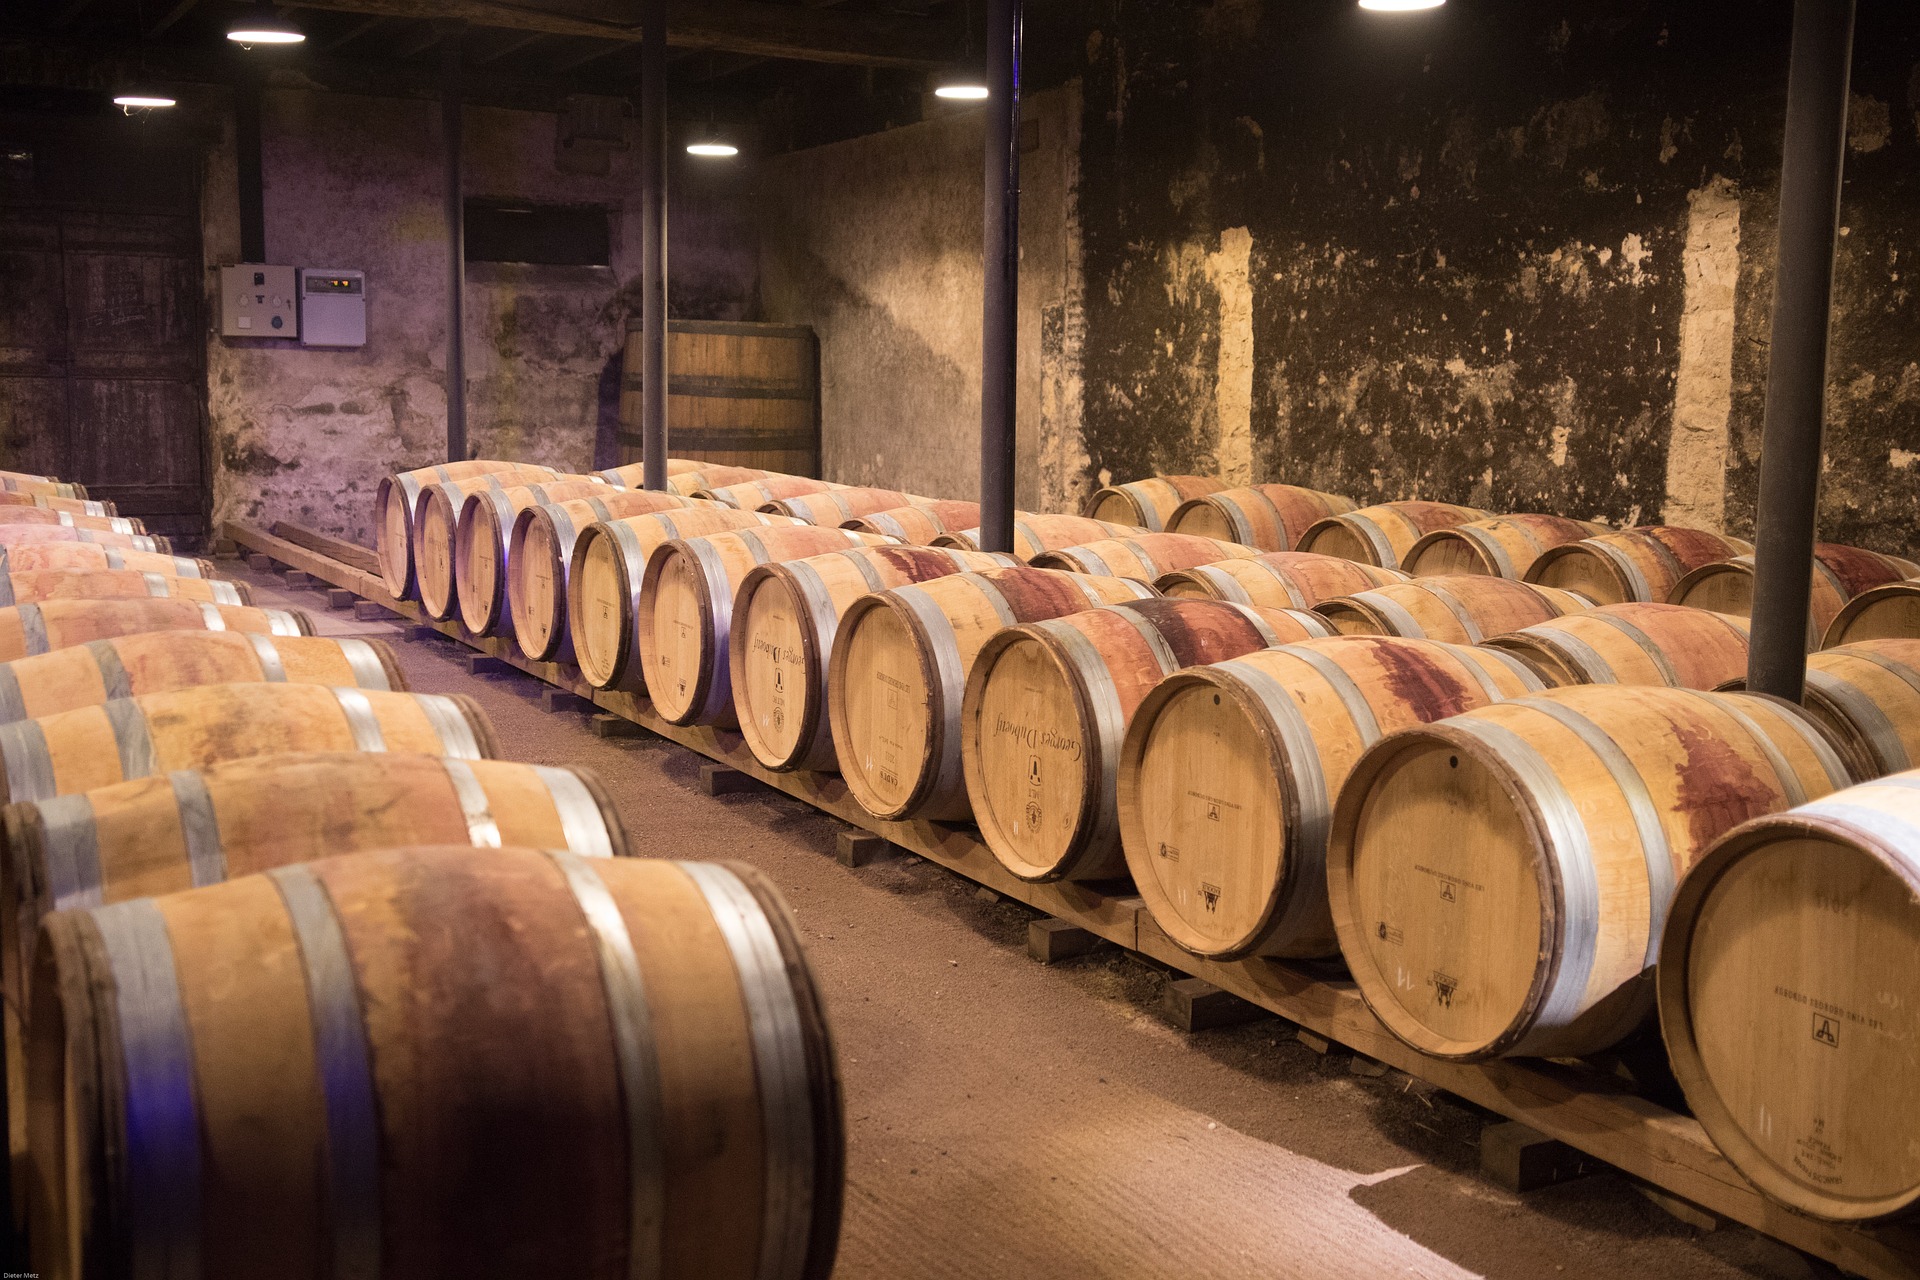 法国波尔多波亚克男爵酒庄干红葡萄酒红酒2016-Chateau Pichon-Longueville-baron